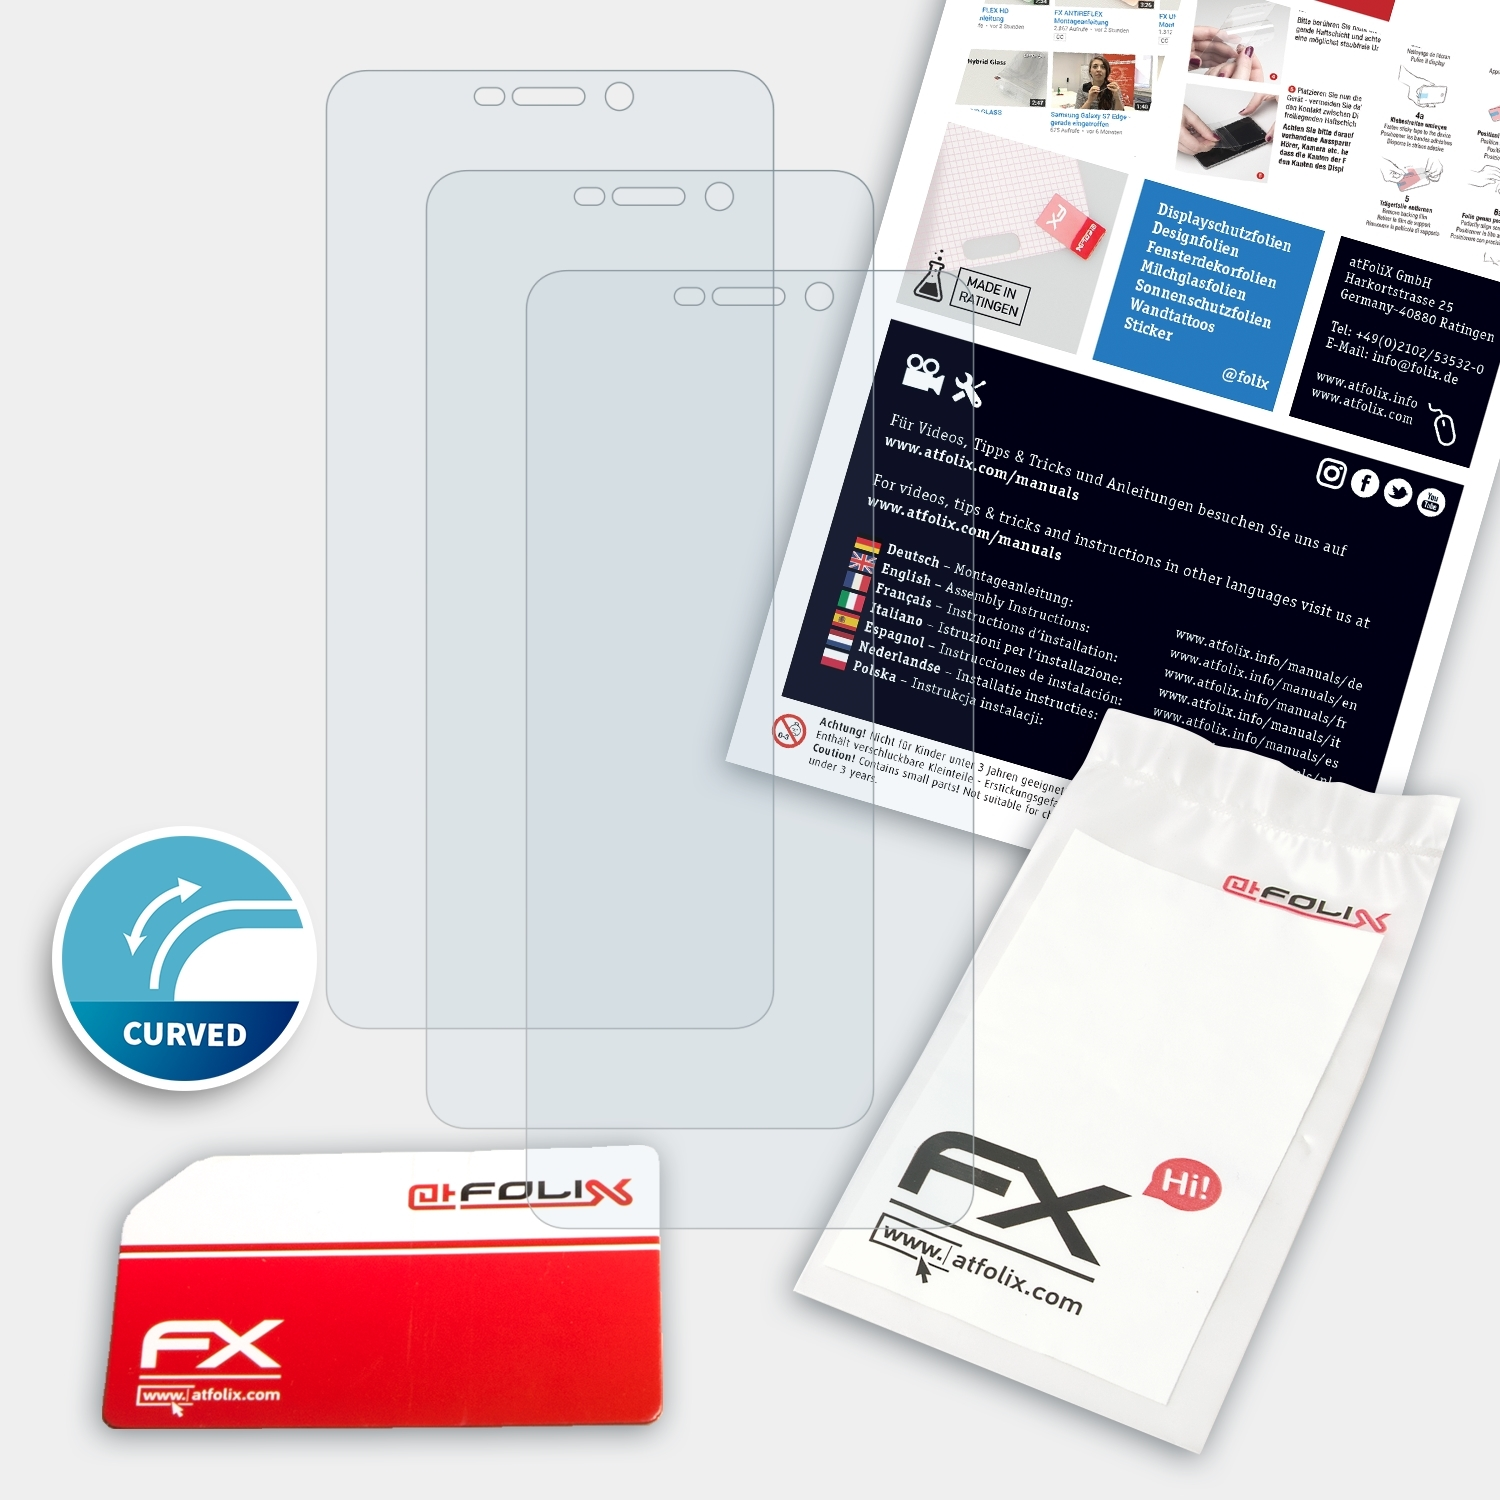 ATFOLIX 3x FX-ActiFleX Displayschutz(für Ride 4G) Wiko